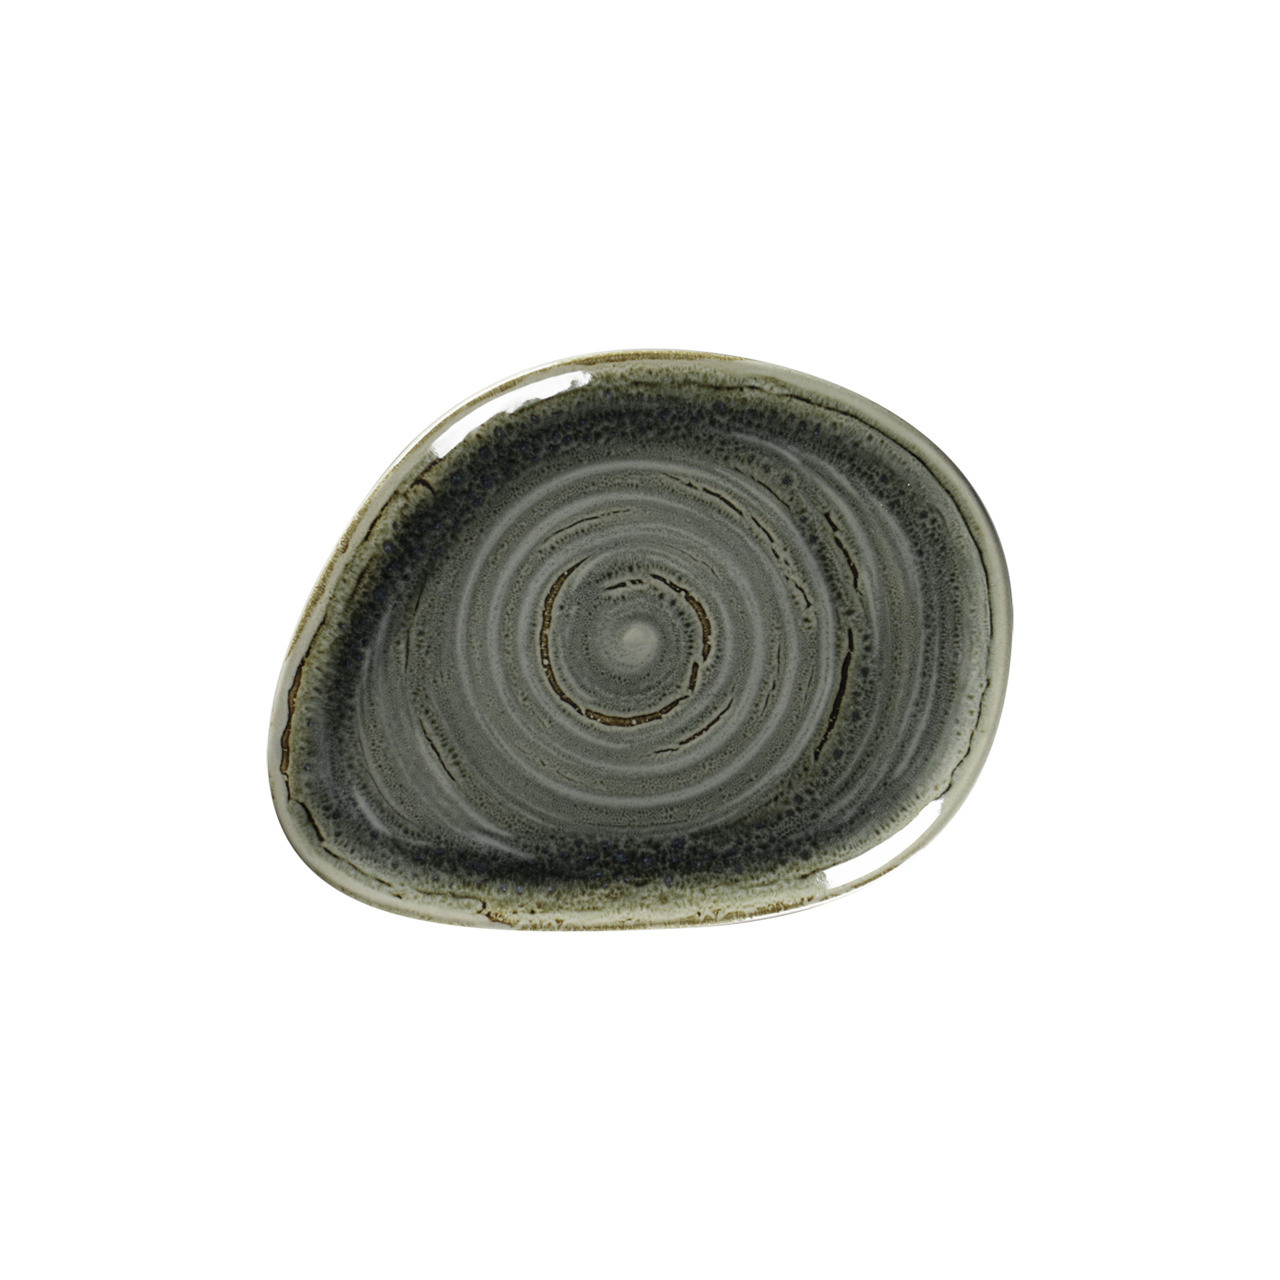 Spot, Teller flach organisch 219 x 165 mm peridot green